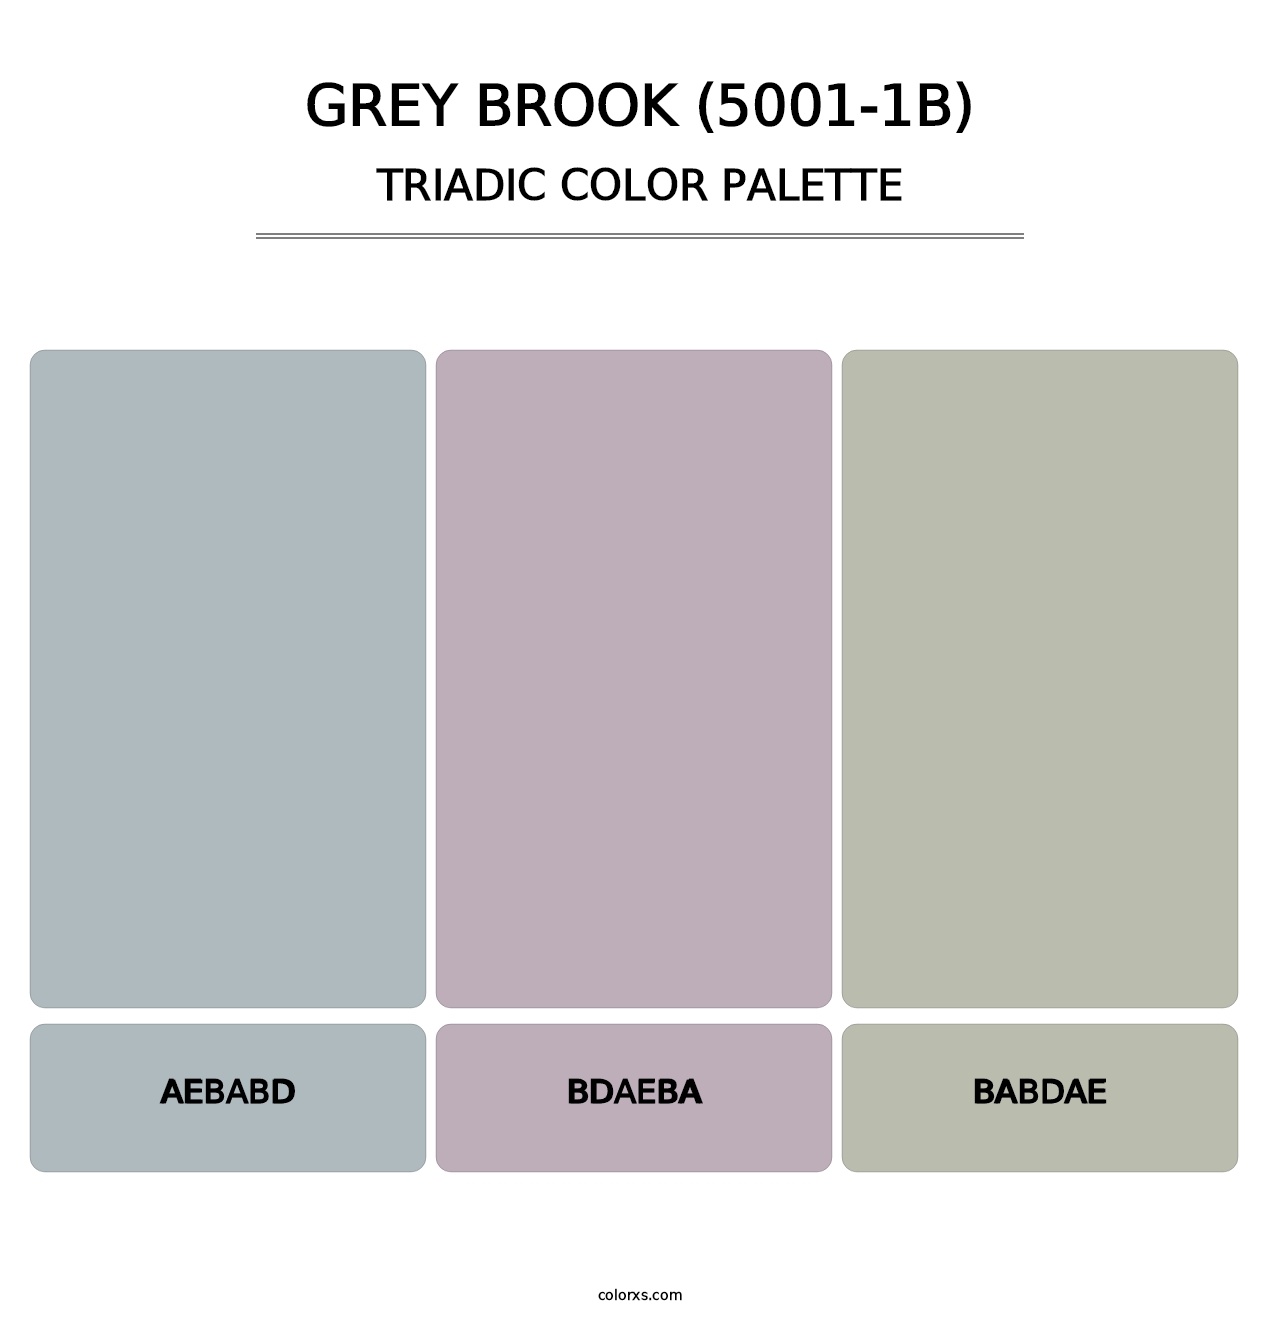 Grey Brook (5001-1B) - Triadic Color Palette